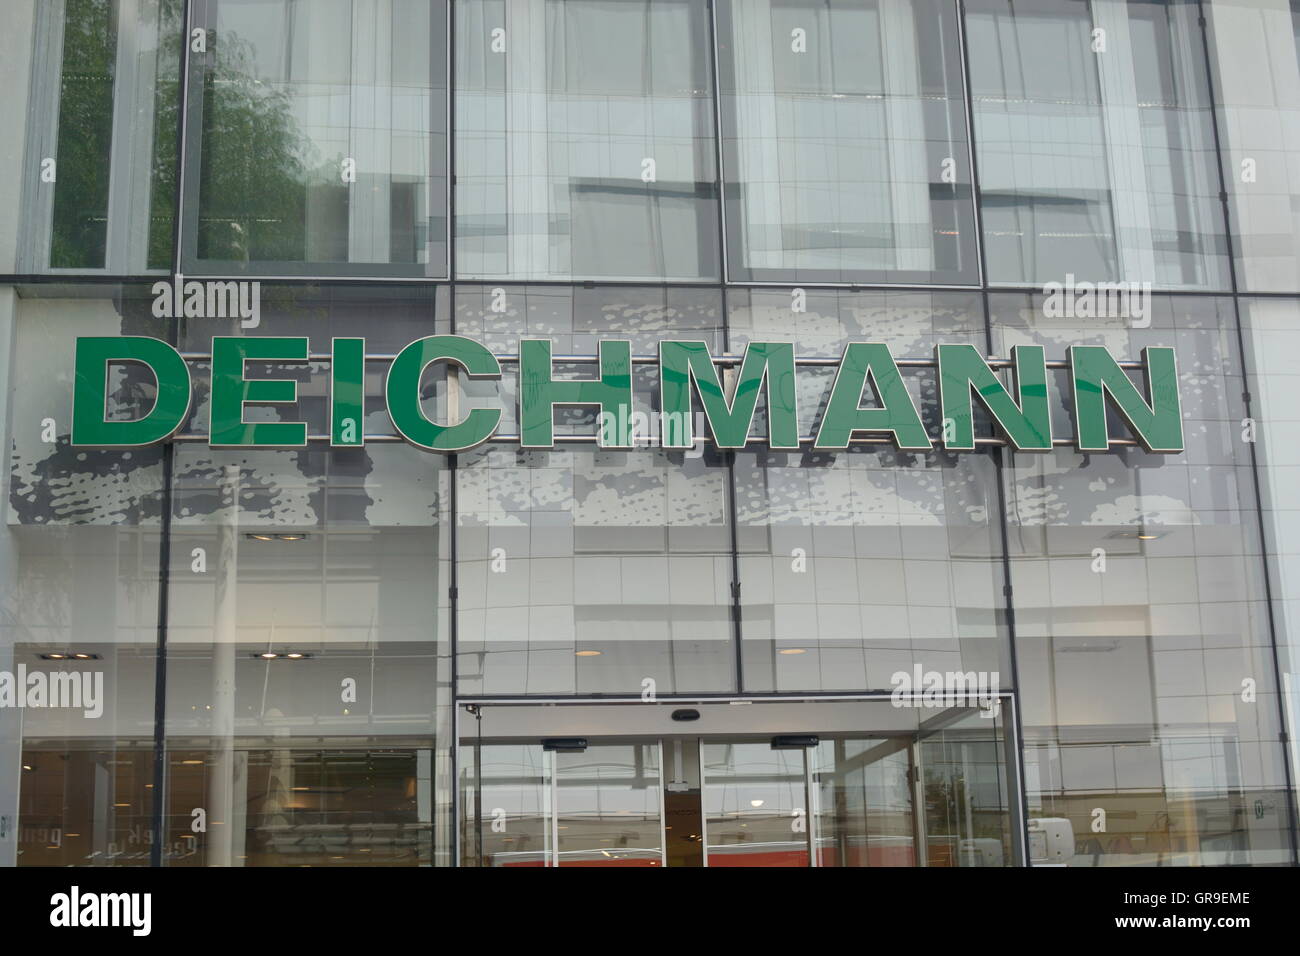 Deichmann-Filiale In der Mariahilferstraße In Wien Stockfotografie - Alamy